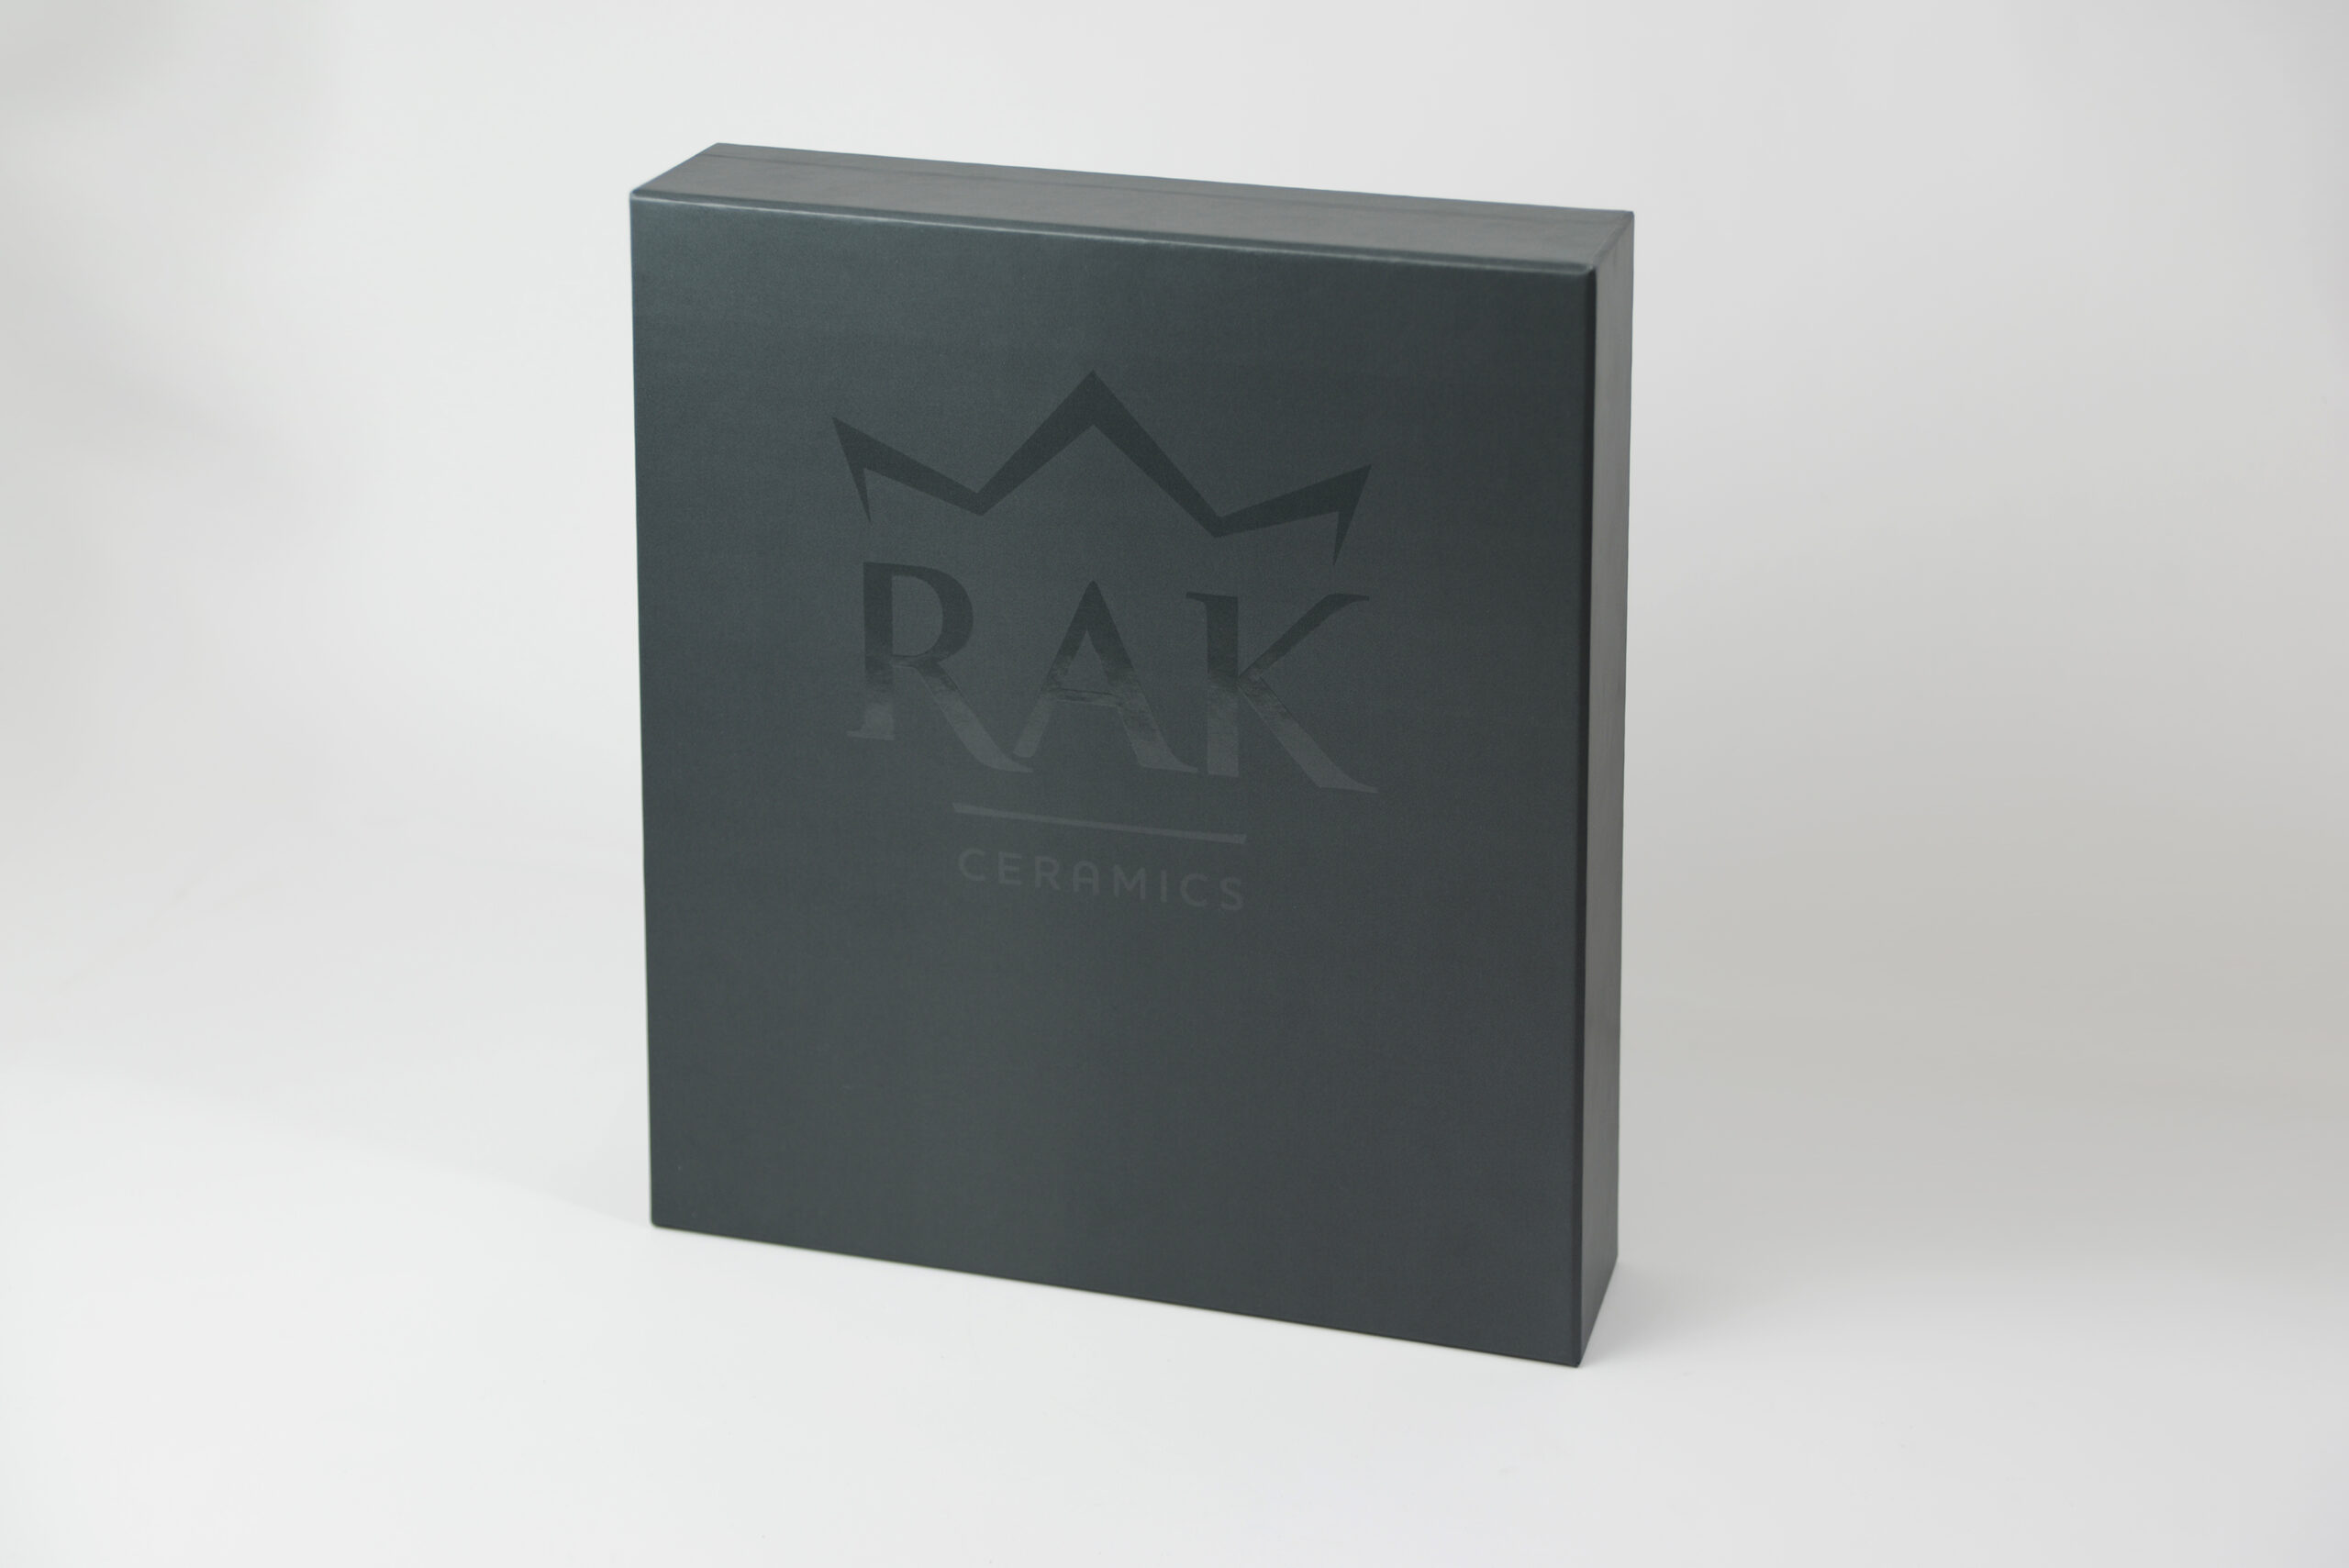 Archiv-Ordner Design - RAK Ceramics